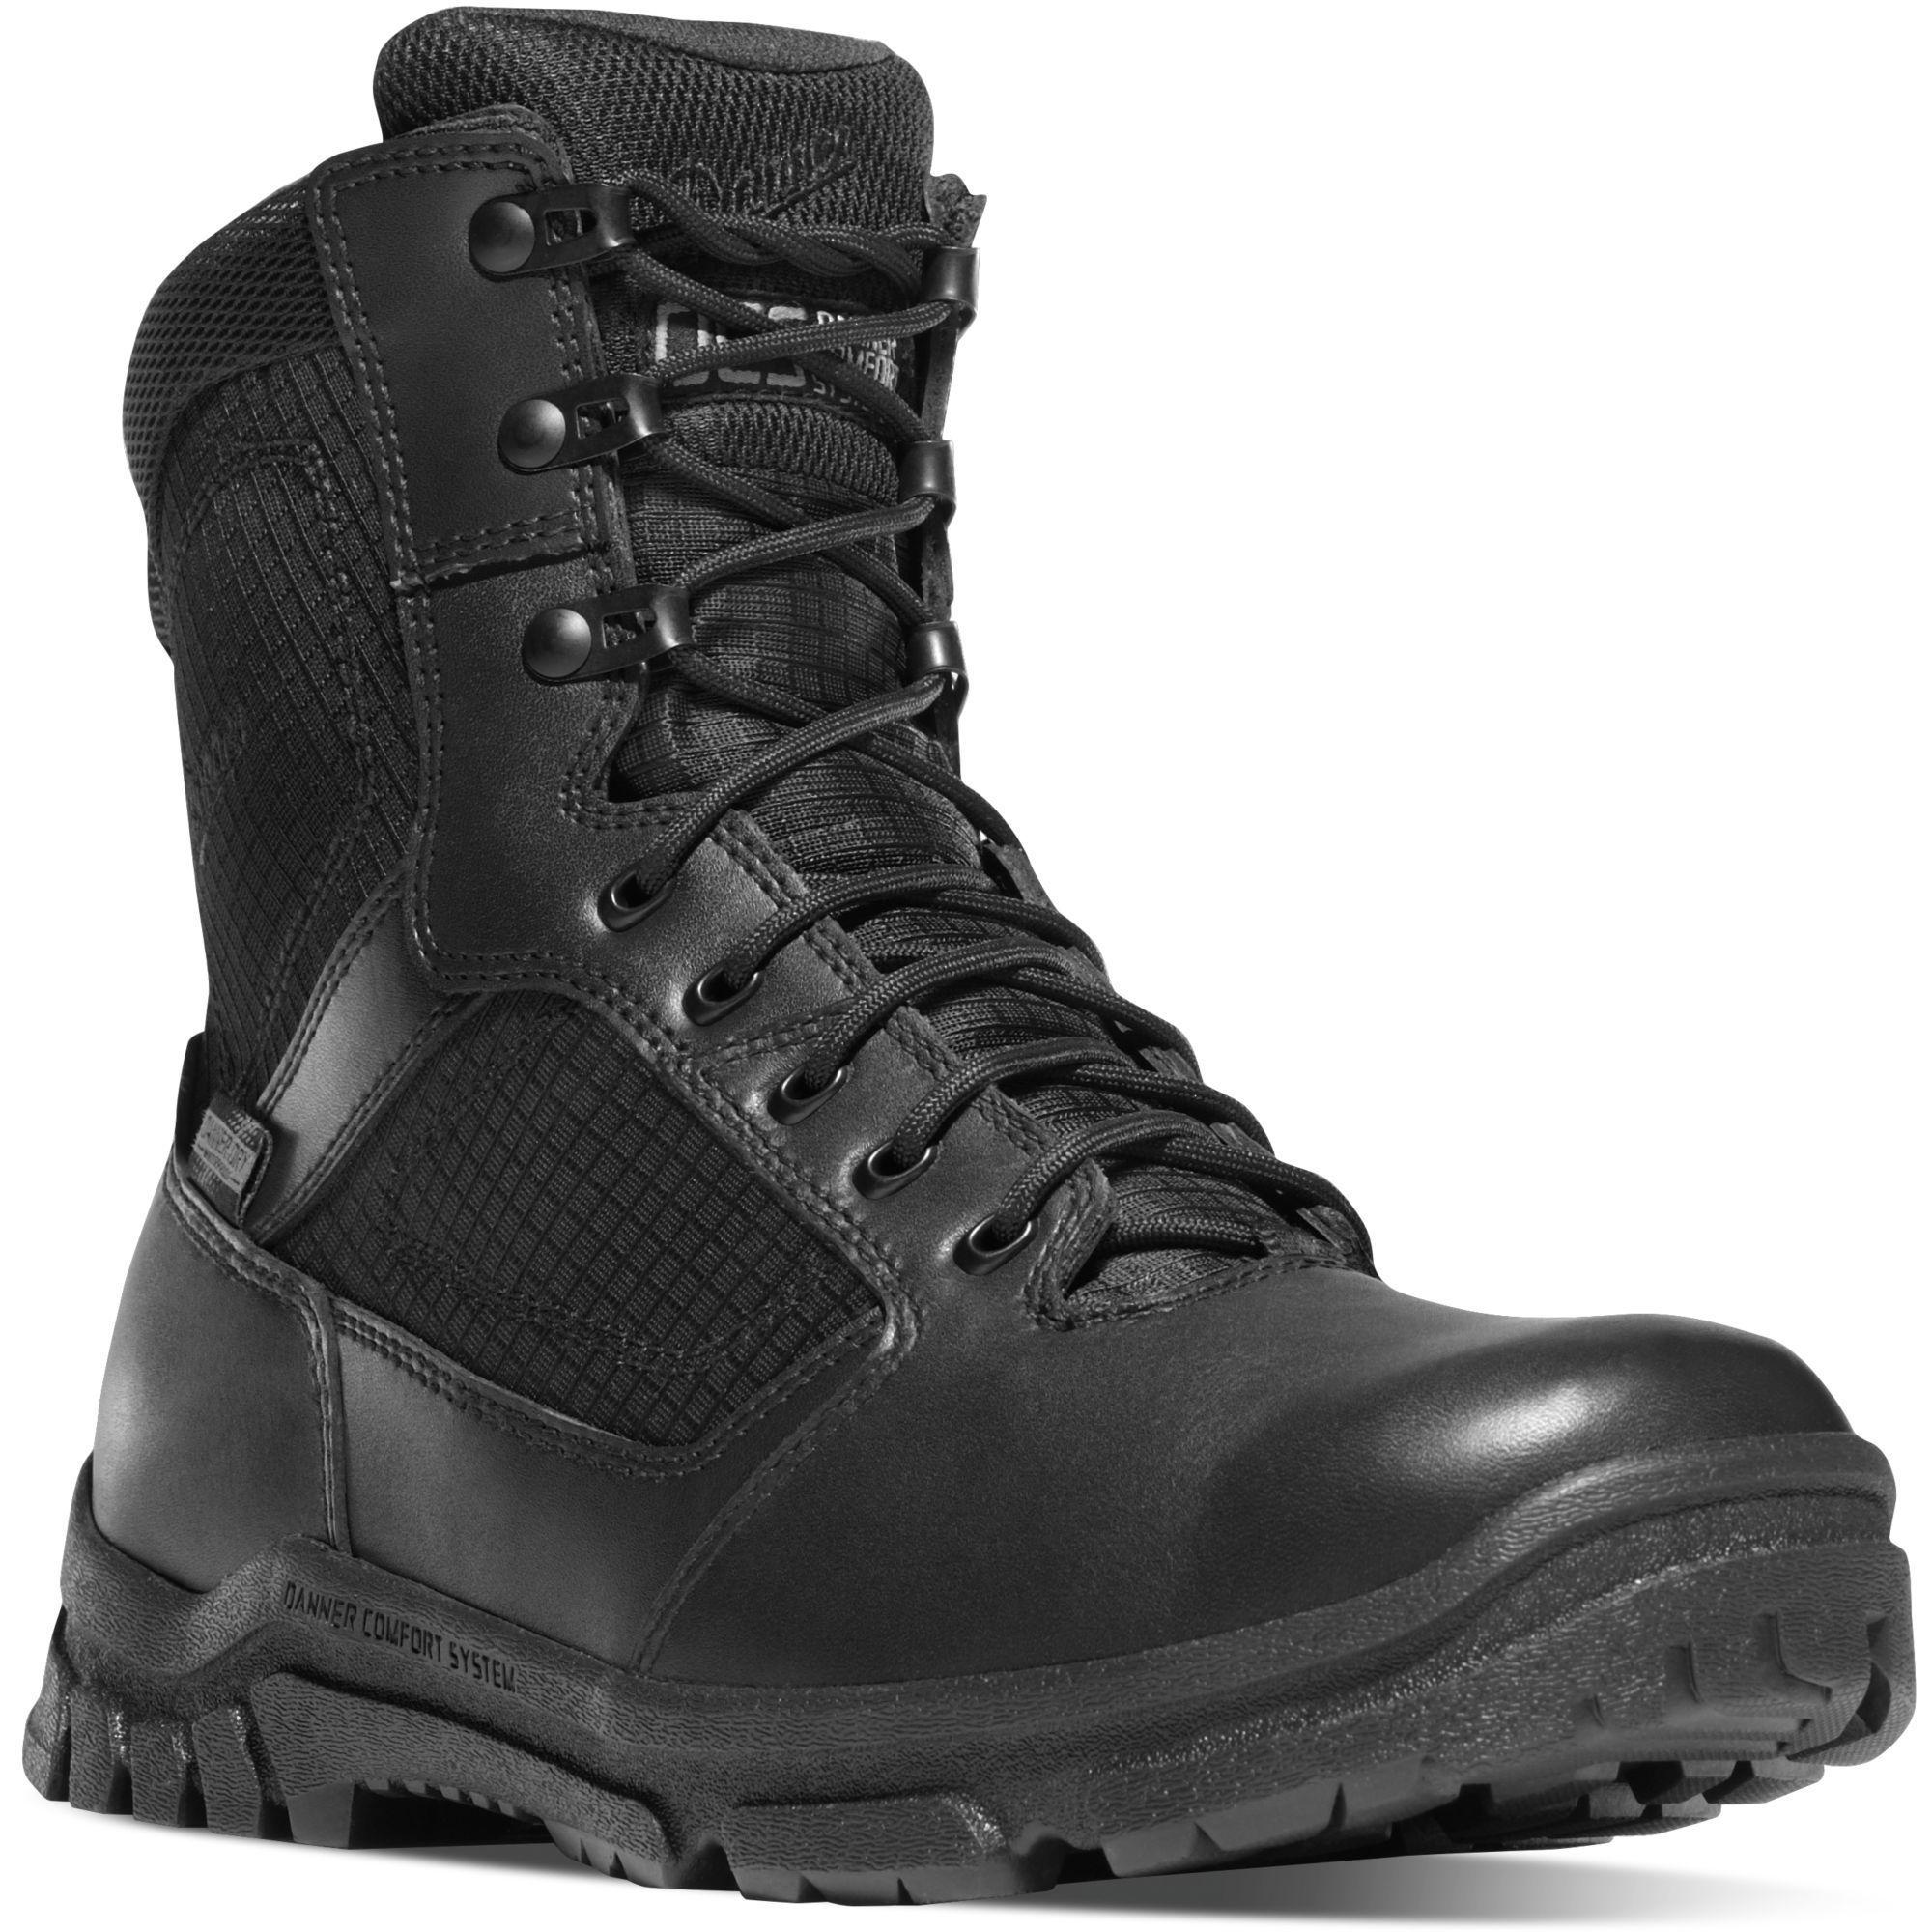 Danner Men's Lookout 8" Side Zip Waterproof Duty Boot - Black - 23824 7 / Medium / Black - Overlook Boots